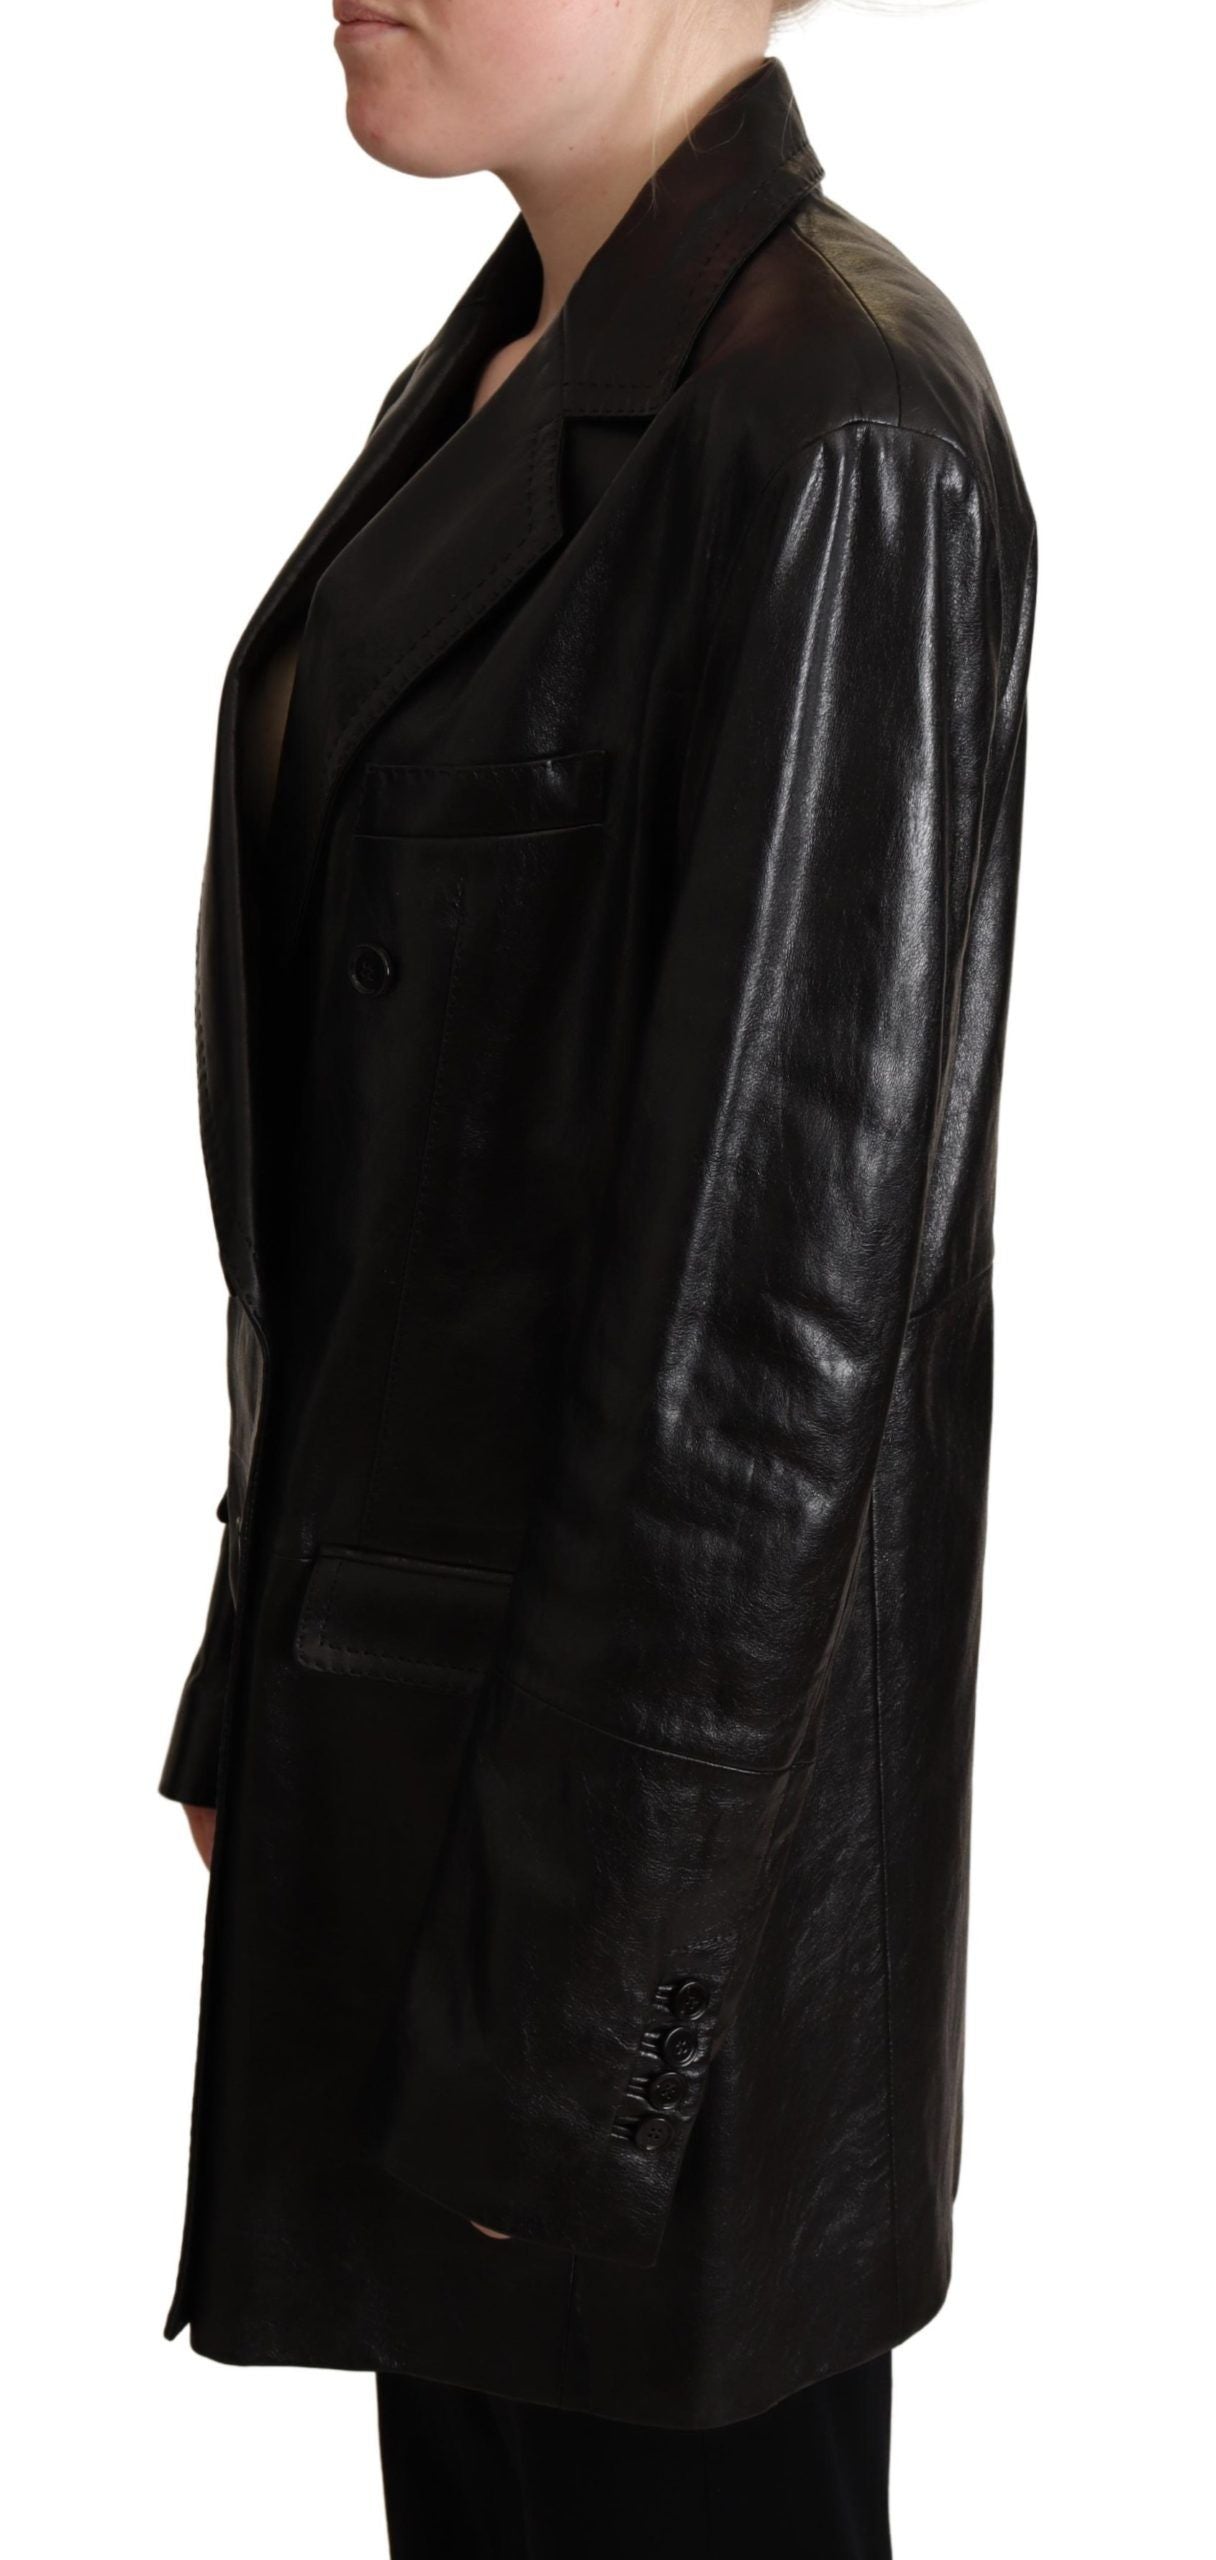 Elegant Black Leather Double-Breasted Jacket